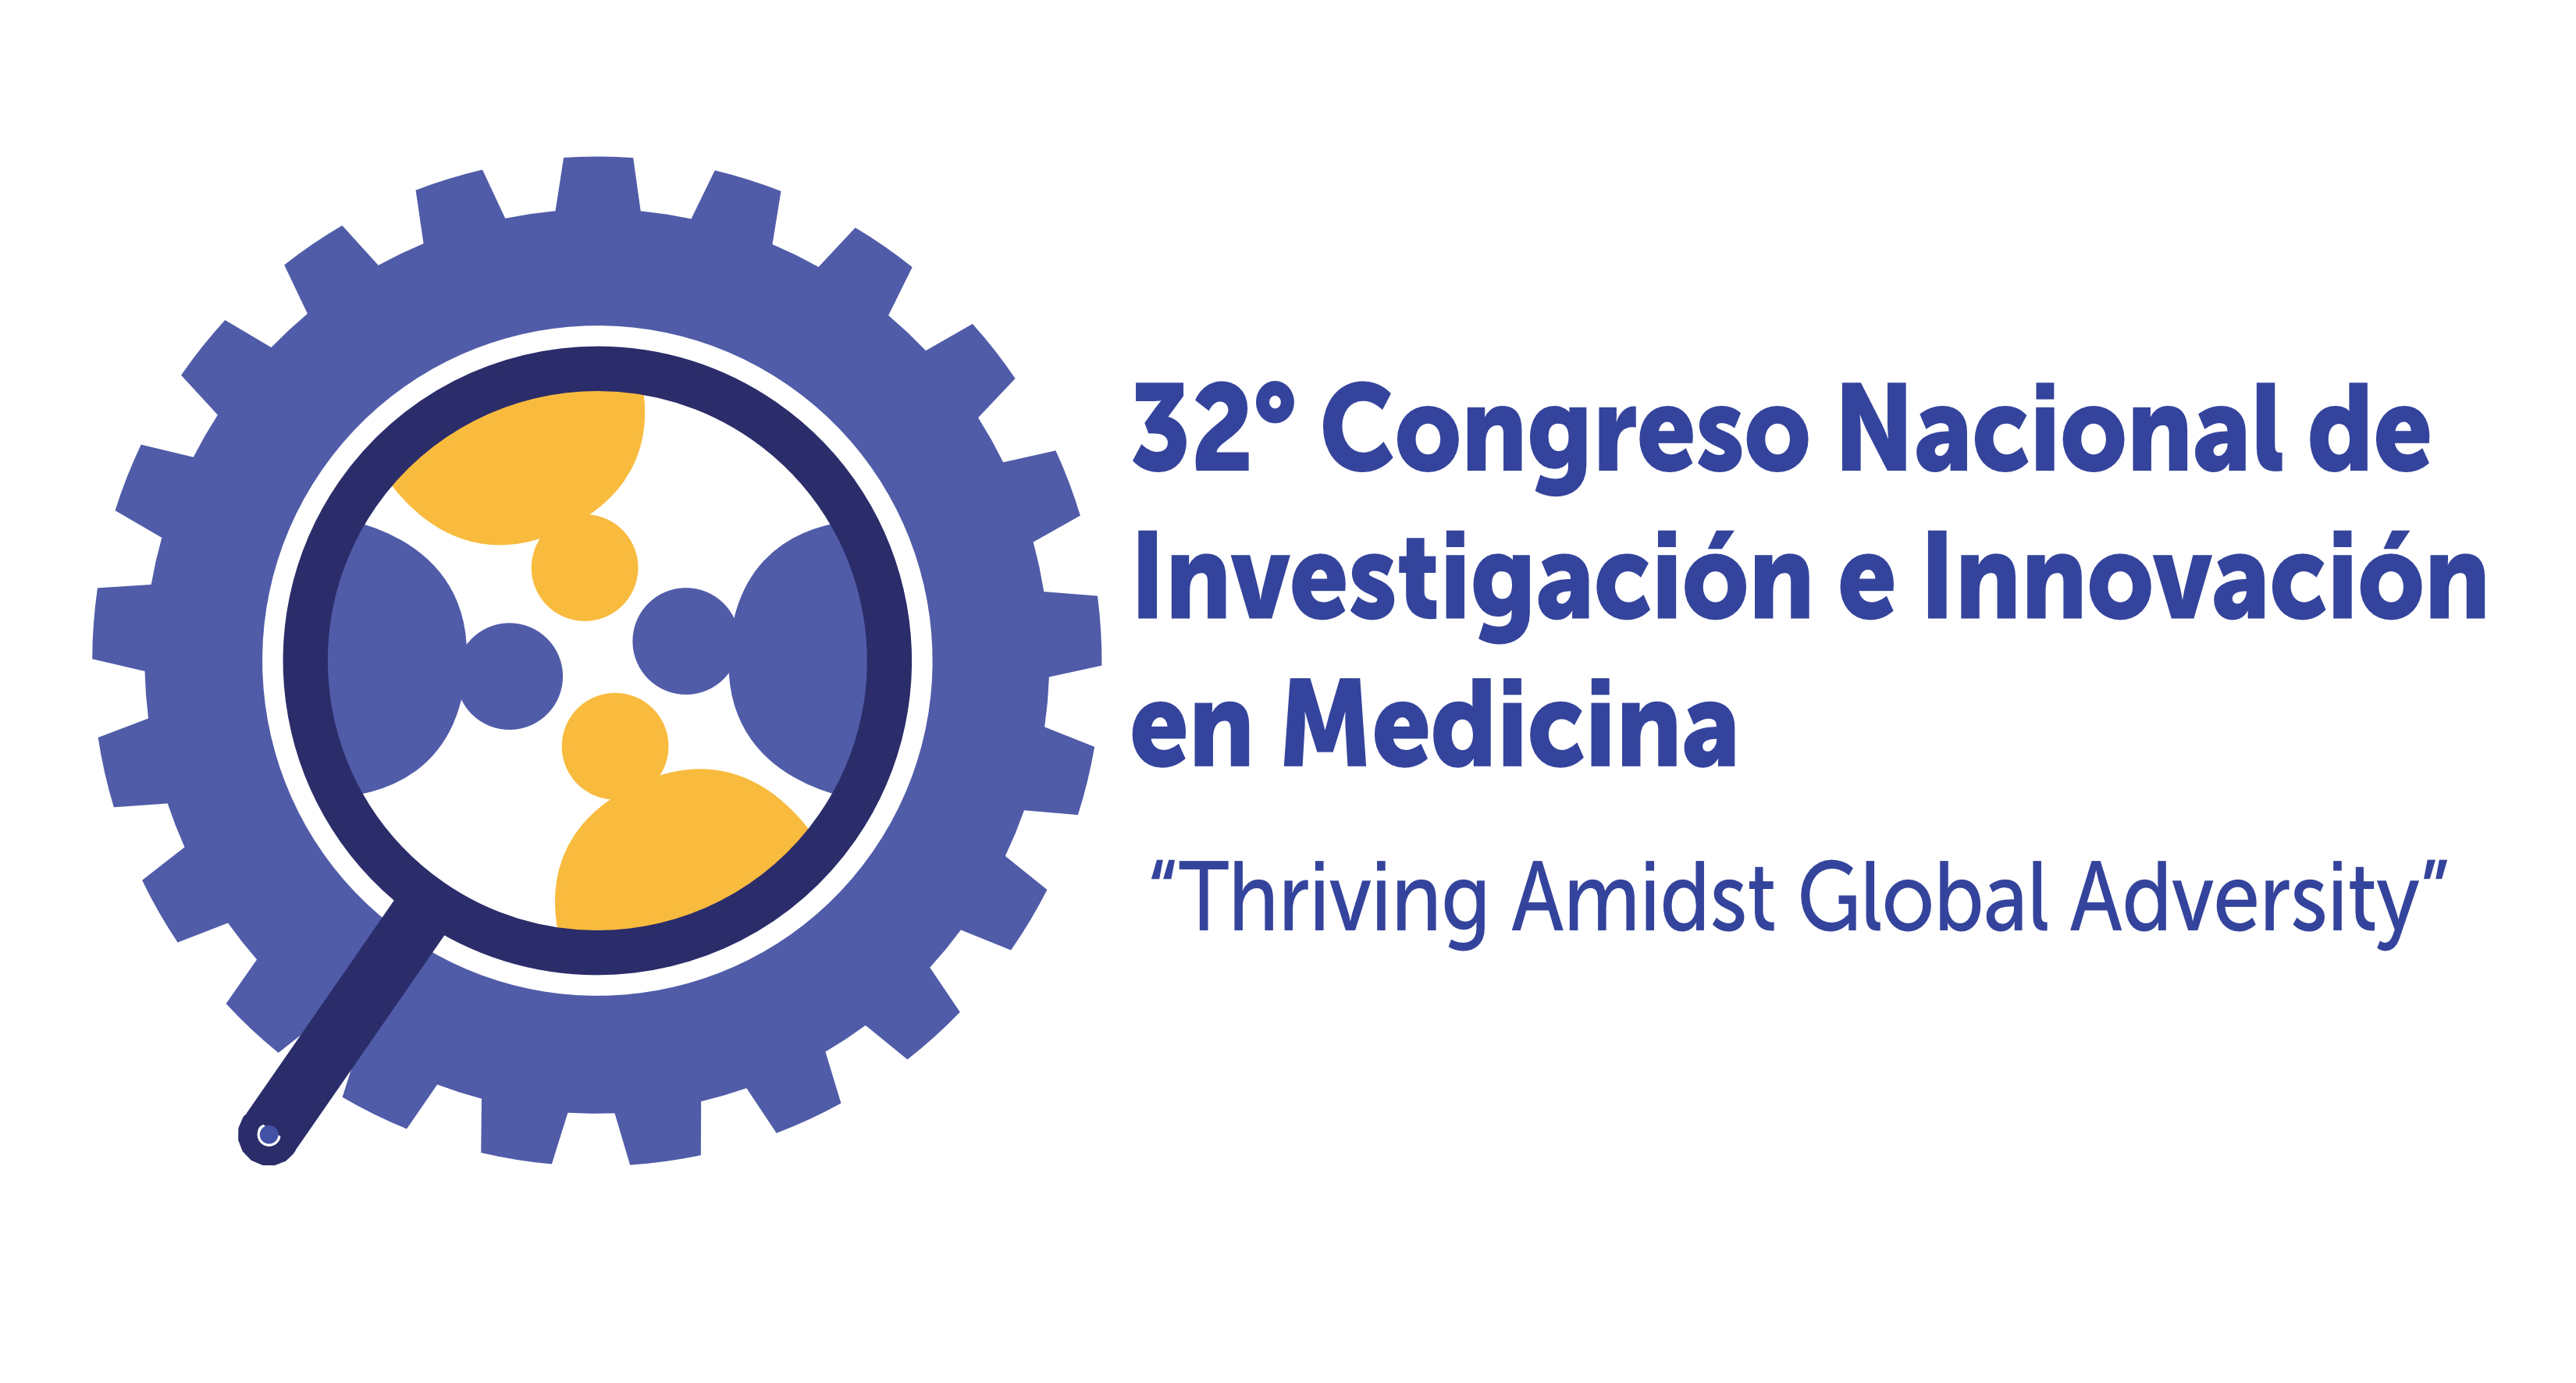 Congreso Nacional de Investigación e Innovación en Medicina